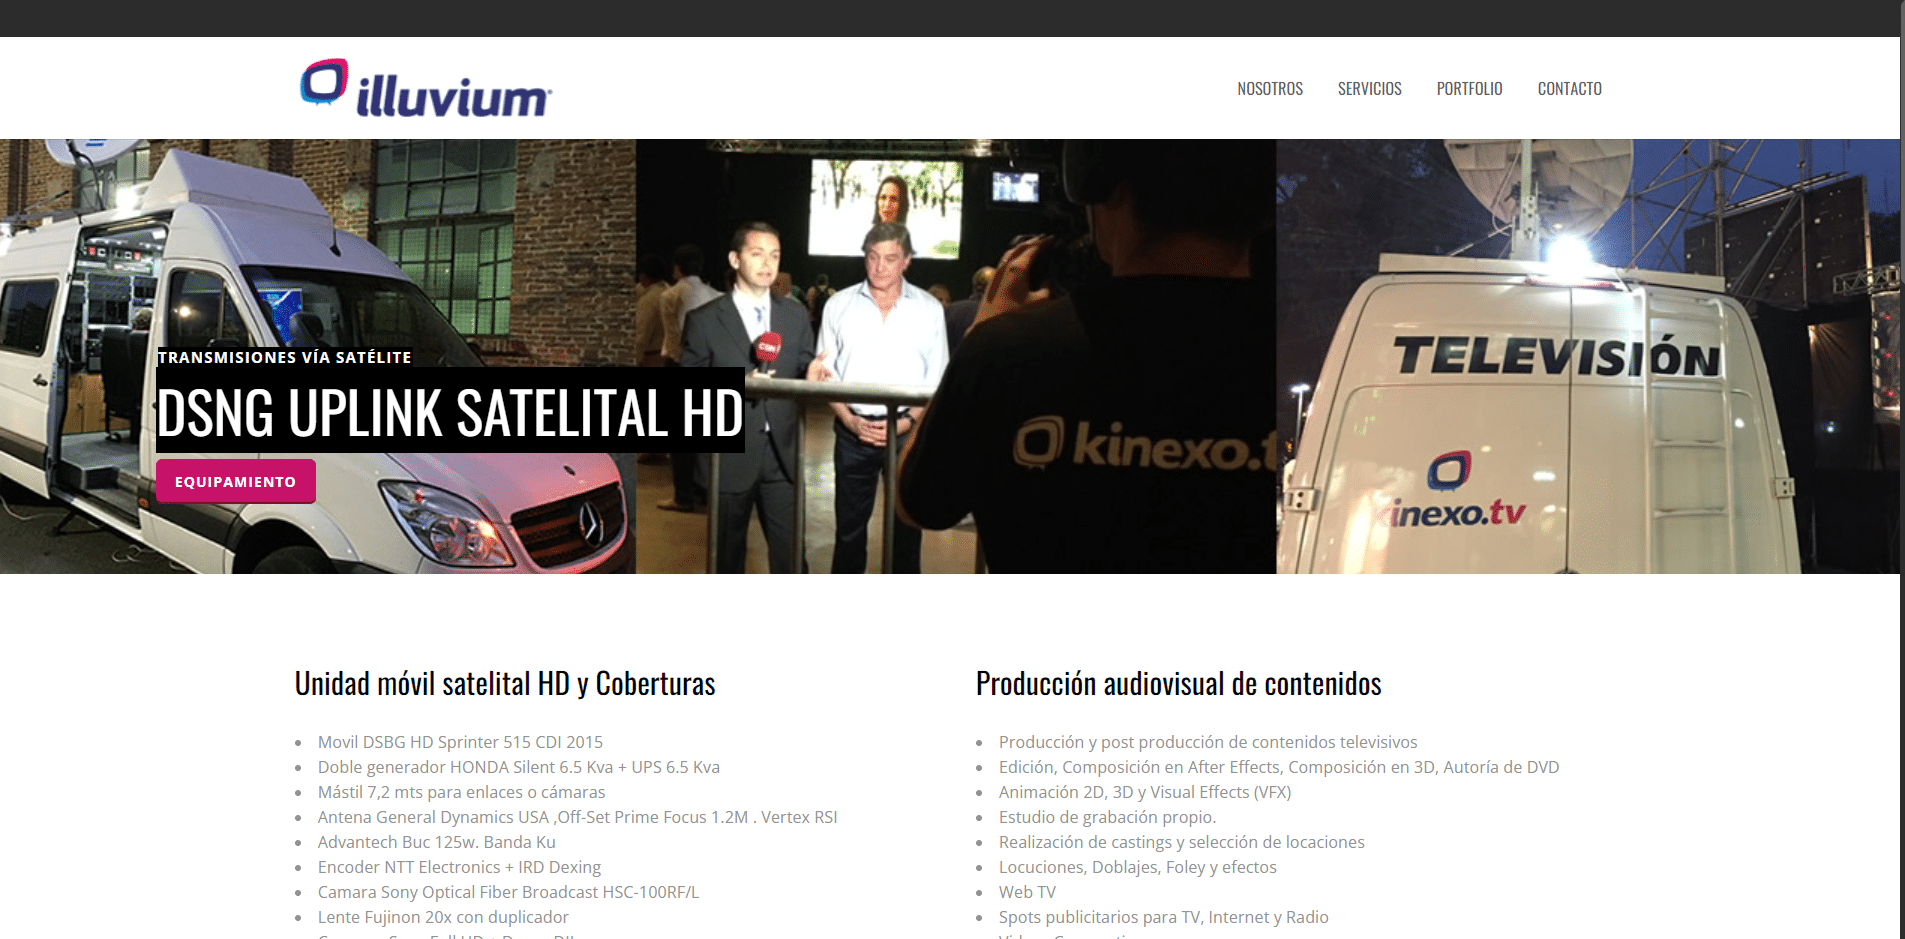 Illuvium gaming platform for NFT